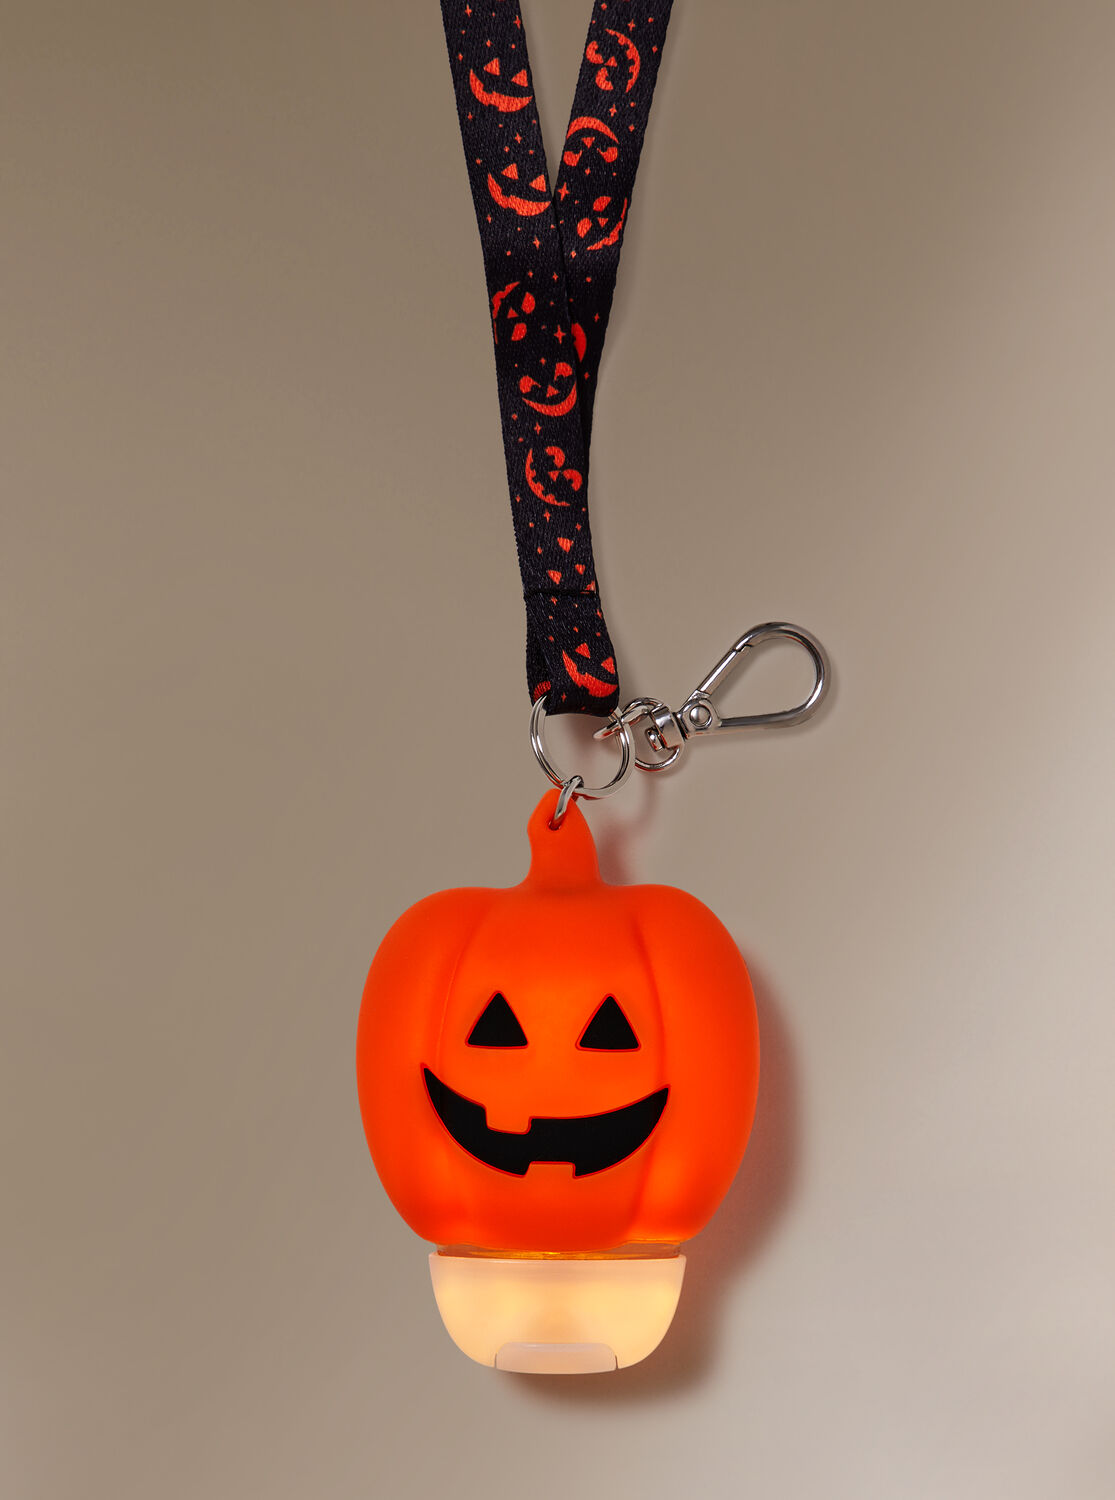 Wearable Light-Up Pumpkin PocketBac Holder